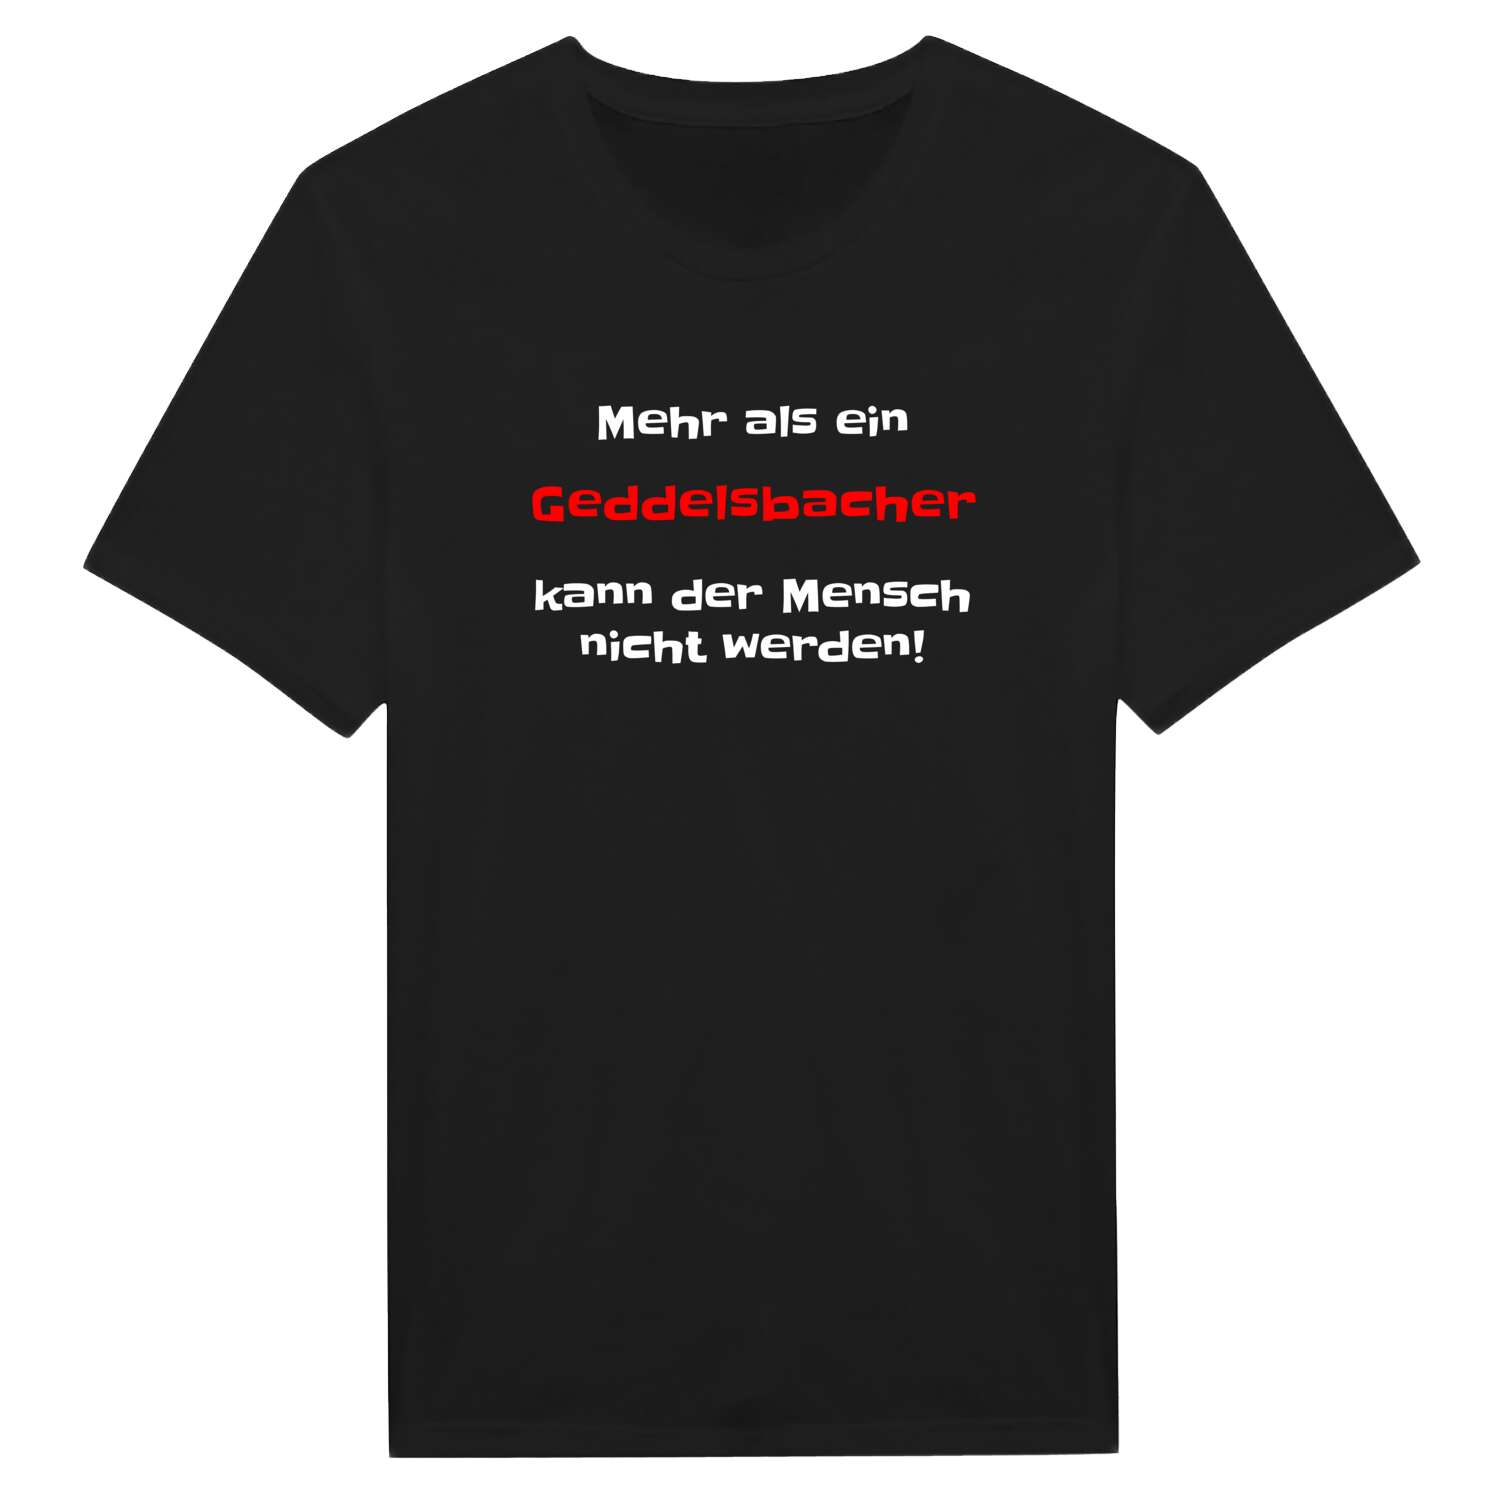 Geddelsbach T-Shirt »Mehr als ein«